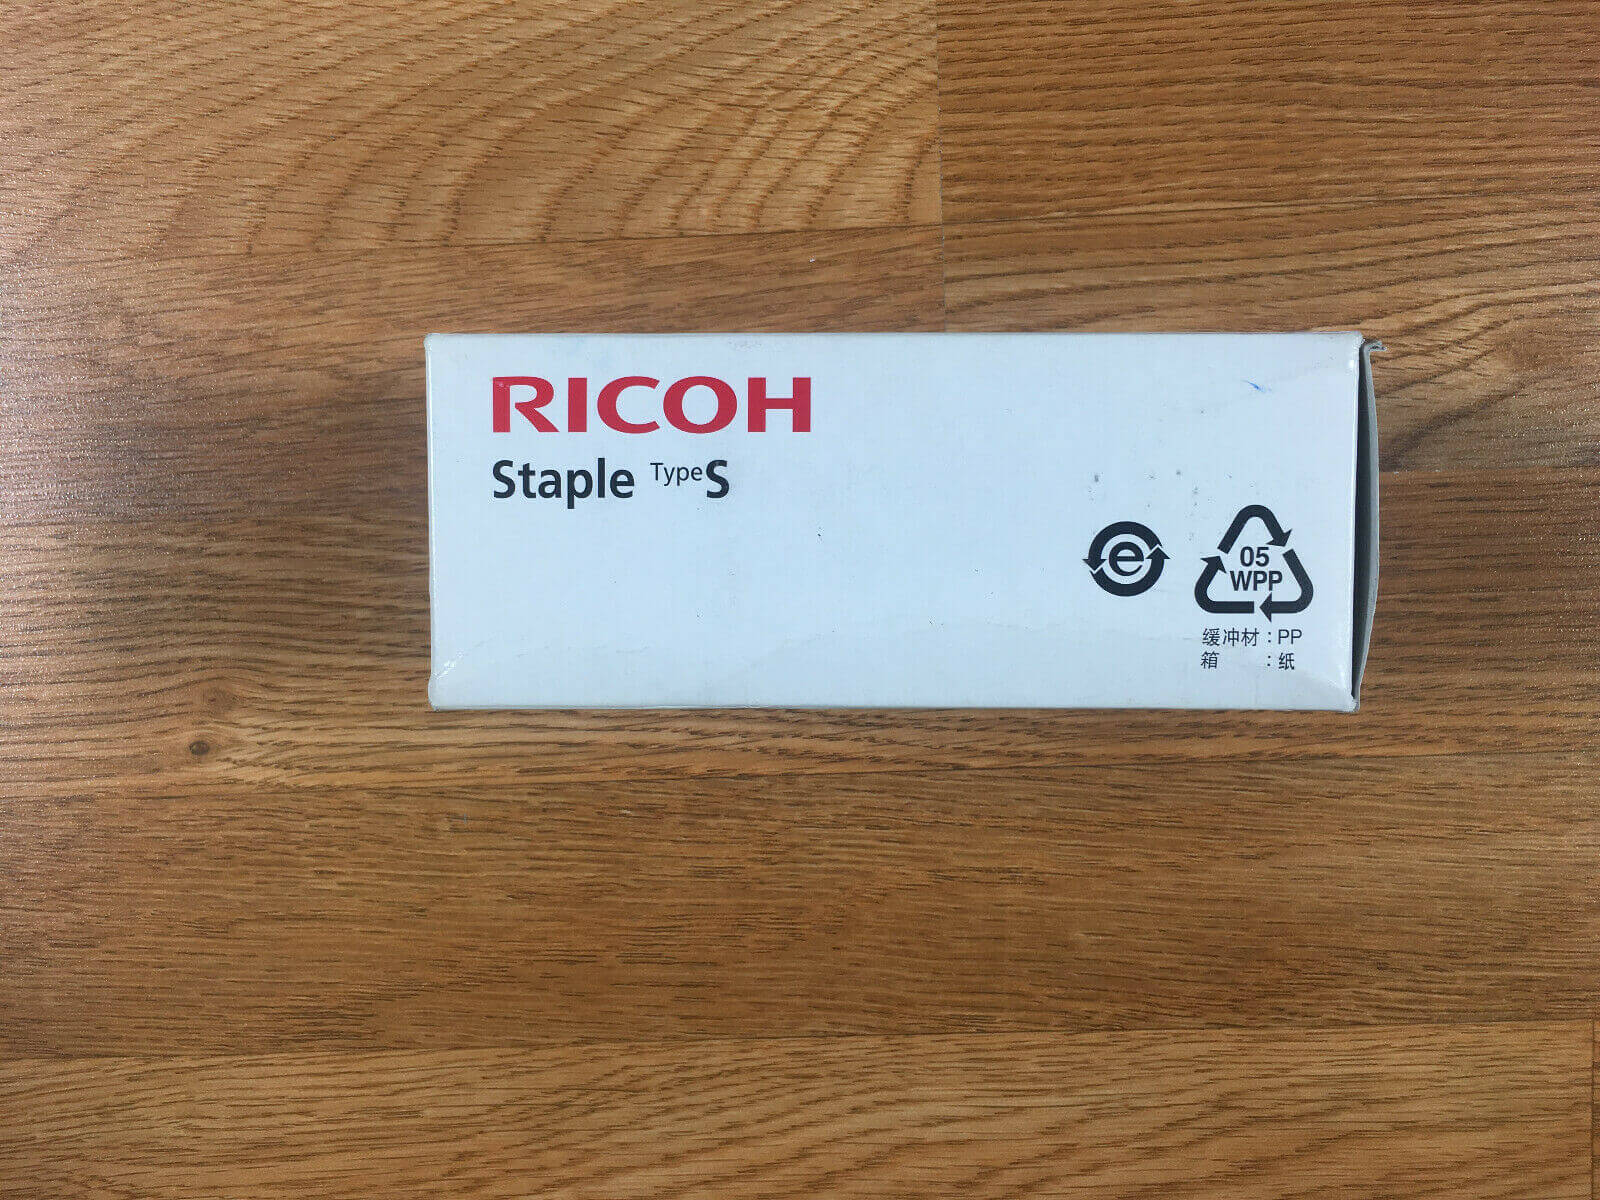 Genuine RIcoh Staple Type S 412847 SR3000 SR3100 SR3000 SR3150 Same Day Shipping - copier-clearance-center